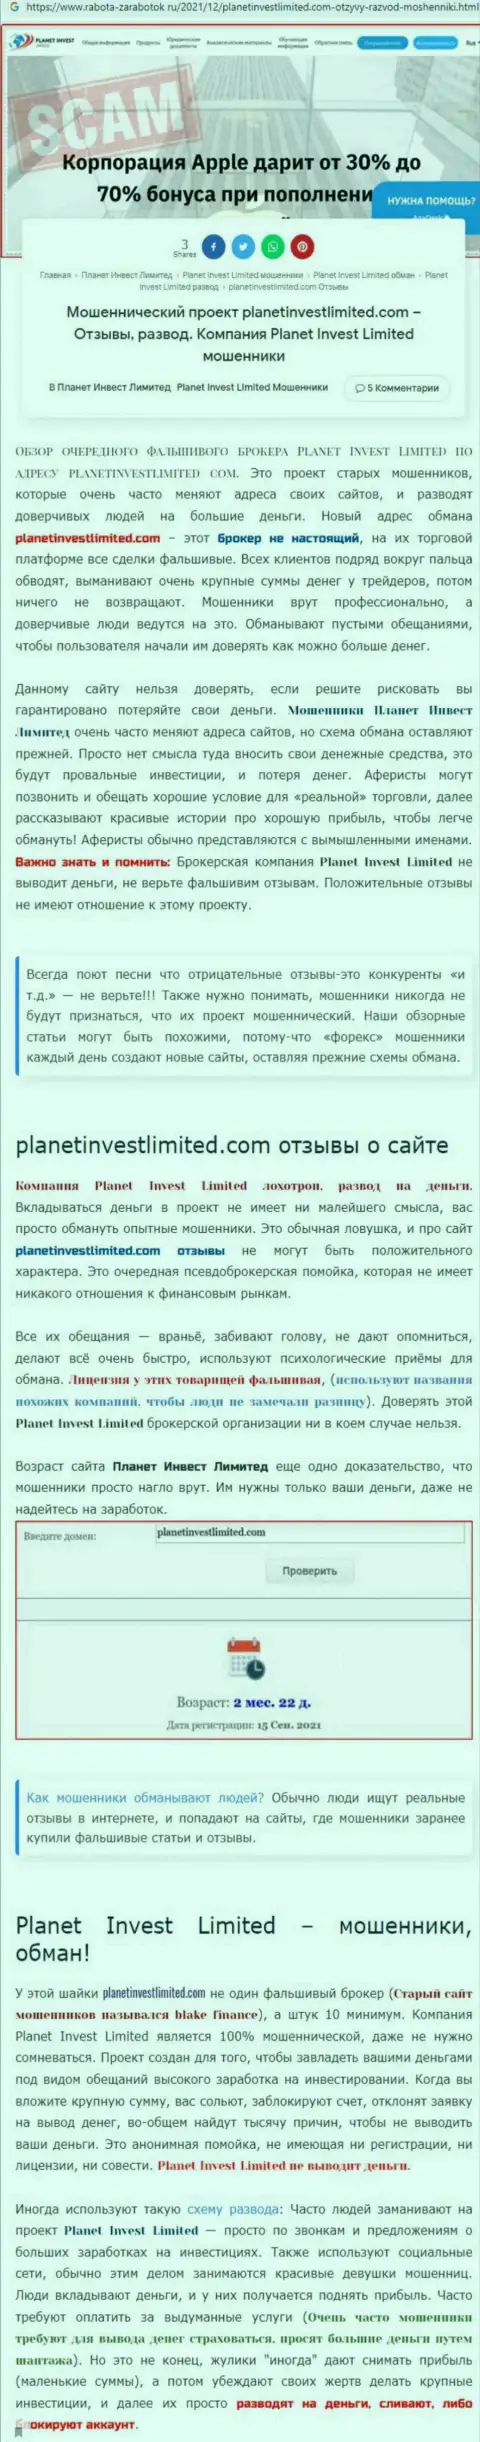 Не рискованно ли работать с Planet Invest Limited ? (Обзор организации)